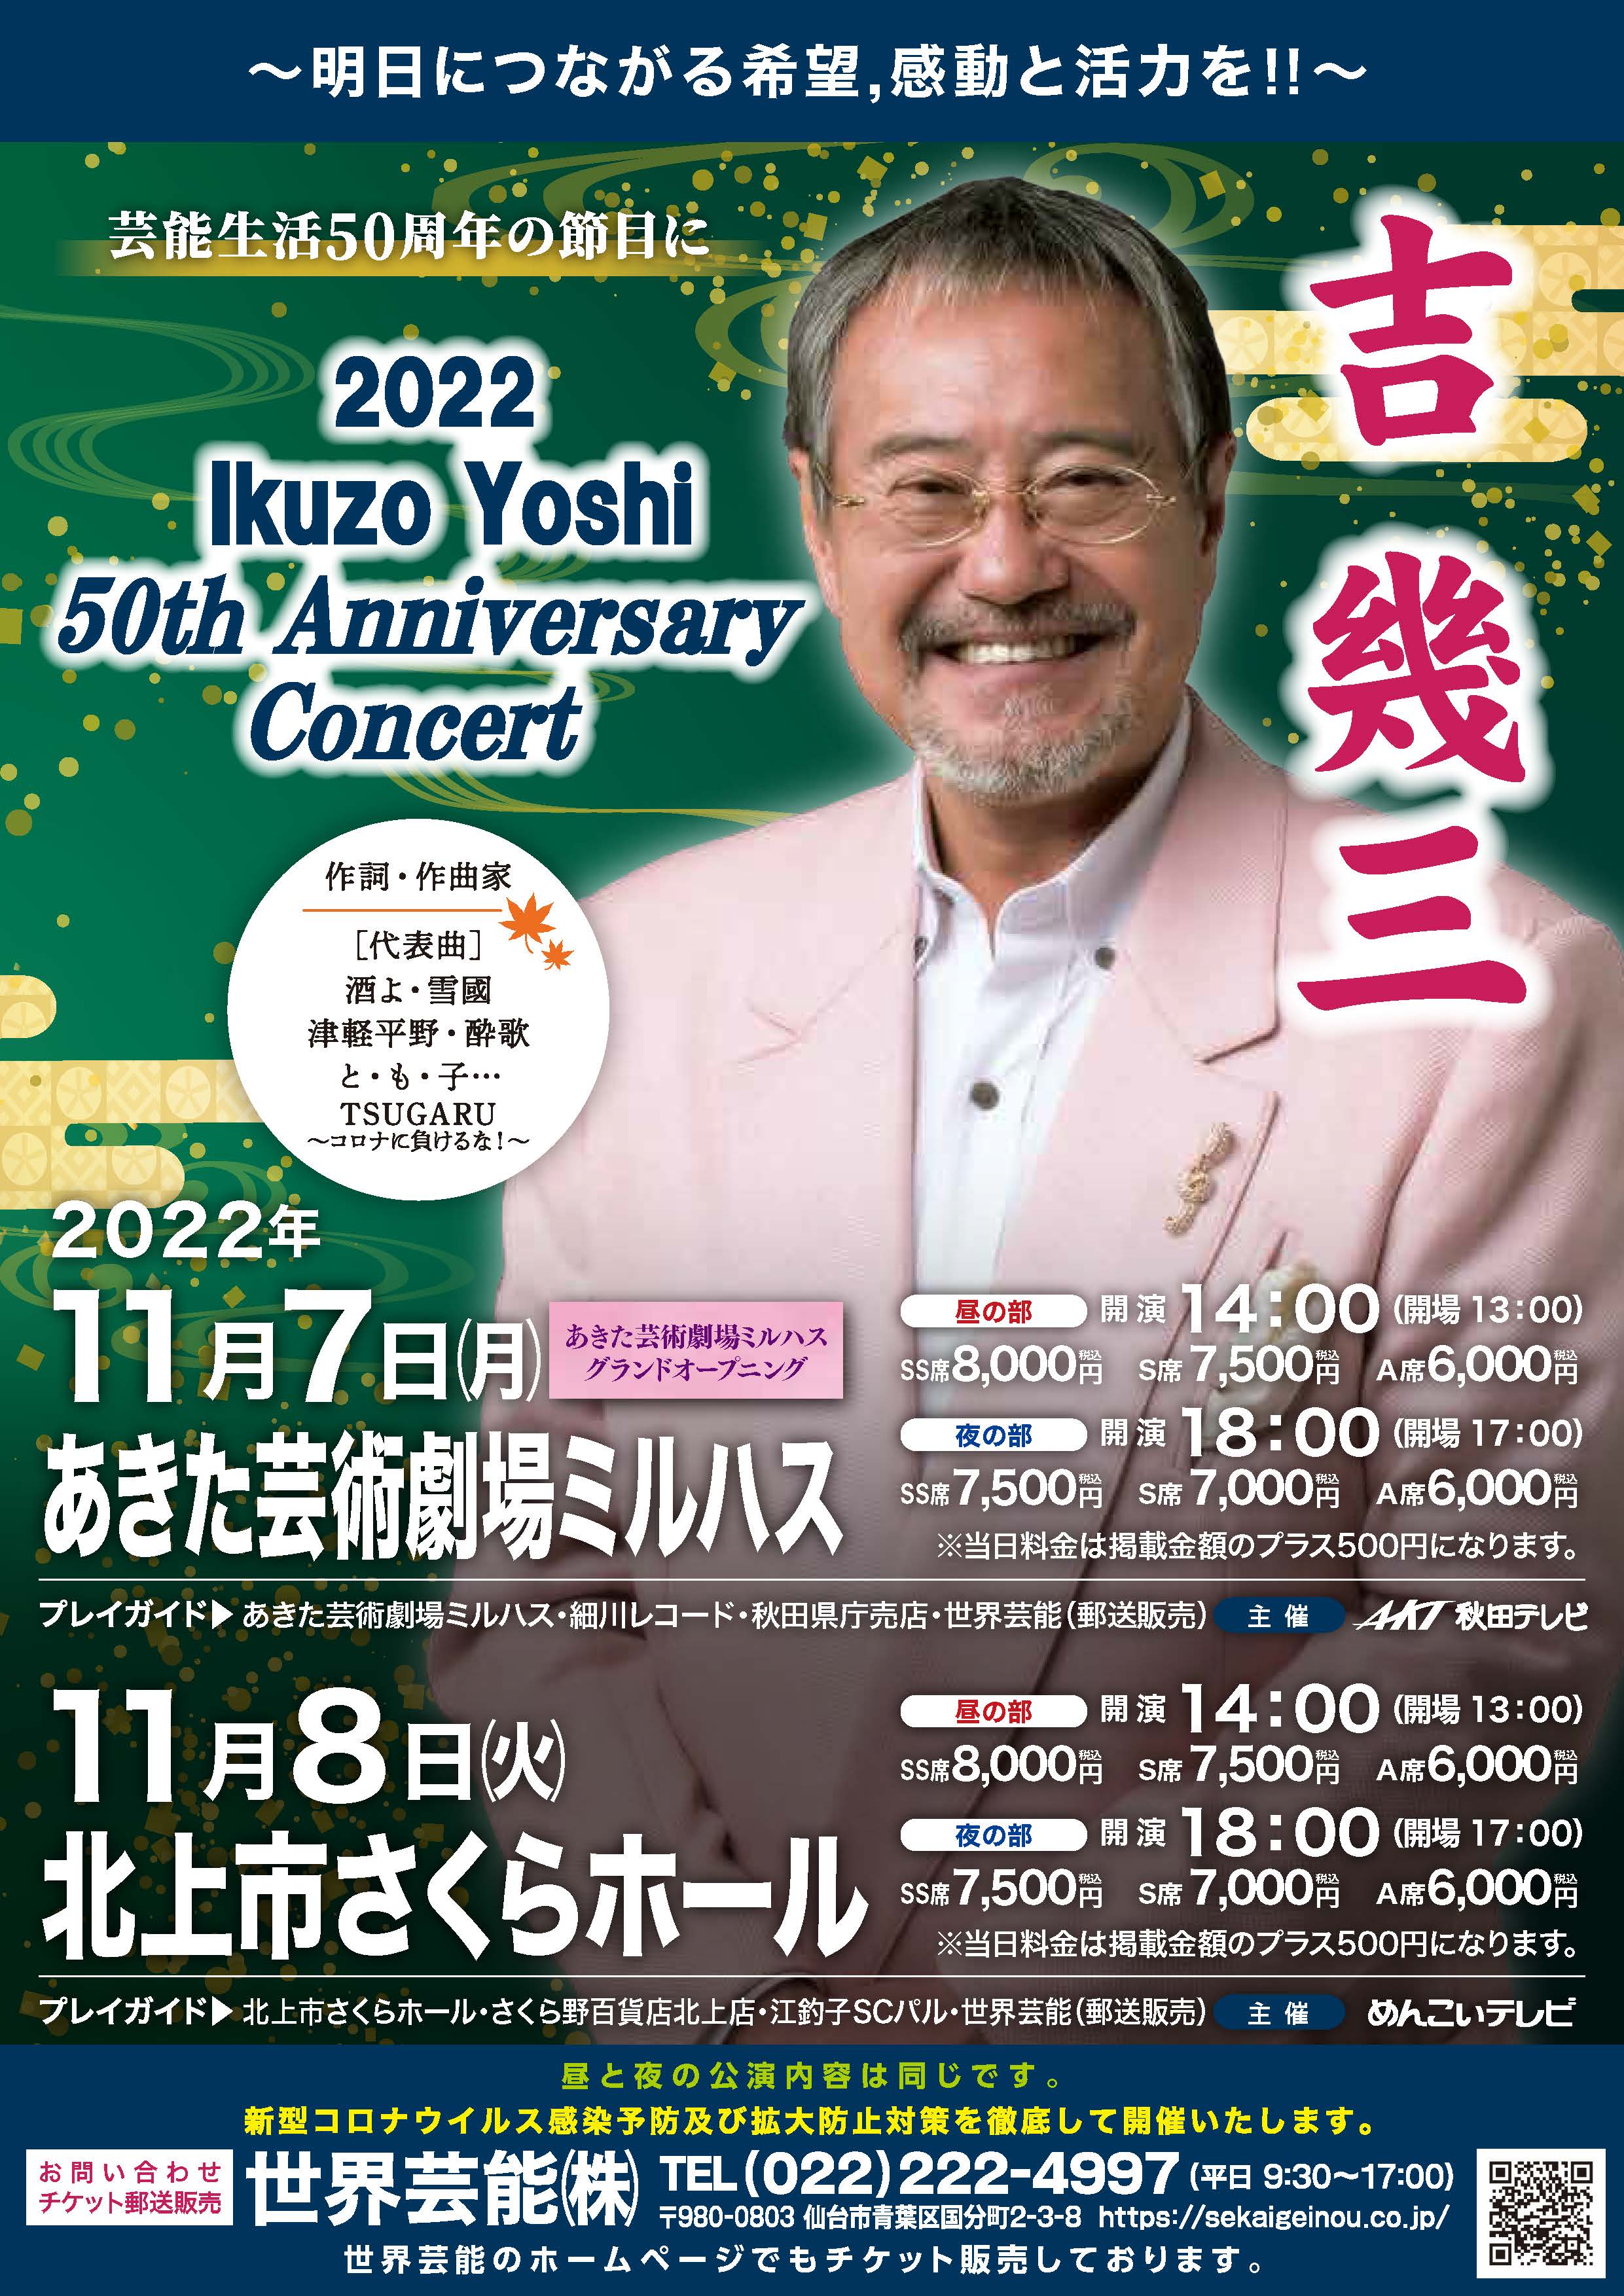 あきた芸術劇場ミルハス グランドオープニング 吉幾三 2022 Ikuzo Yoshi 50th Anniversary Concert